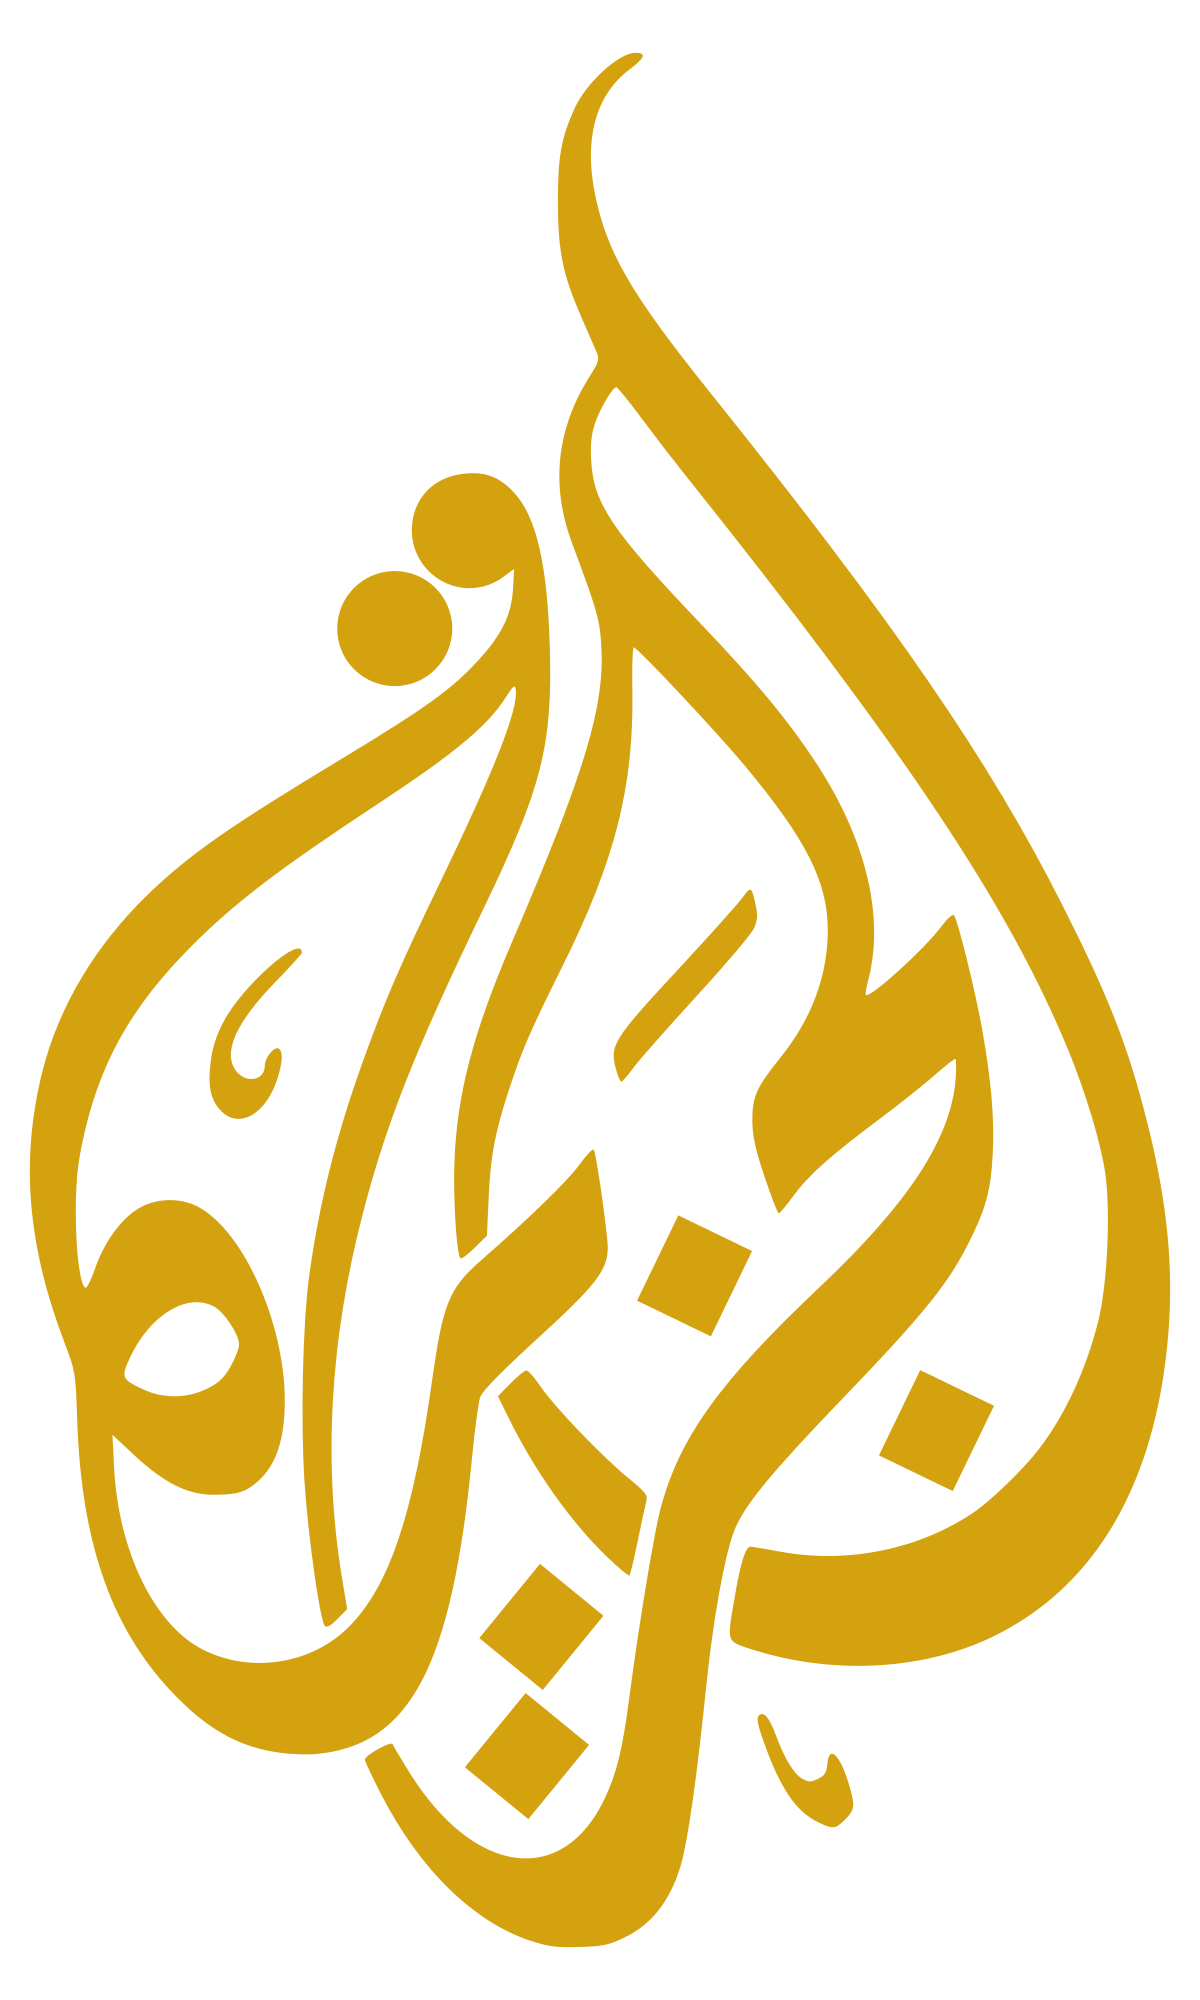 Al Jazeera – Wikipedia